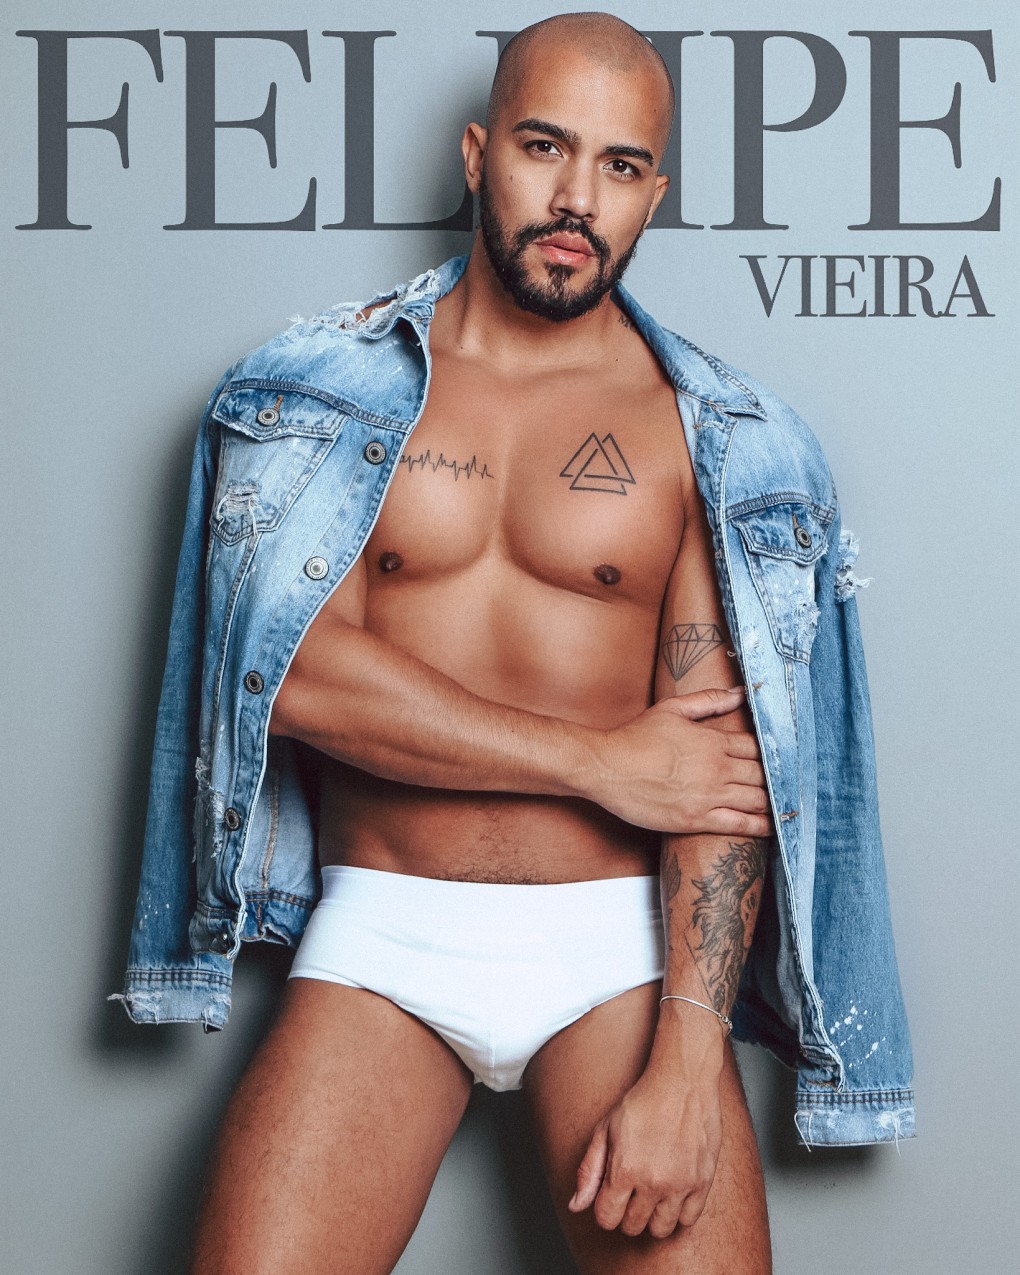 Modelo Fellipe Vieira comemora aniversário em Buenos Aires enquanto divulga sessão de fotos quentíssimas